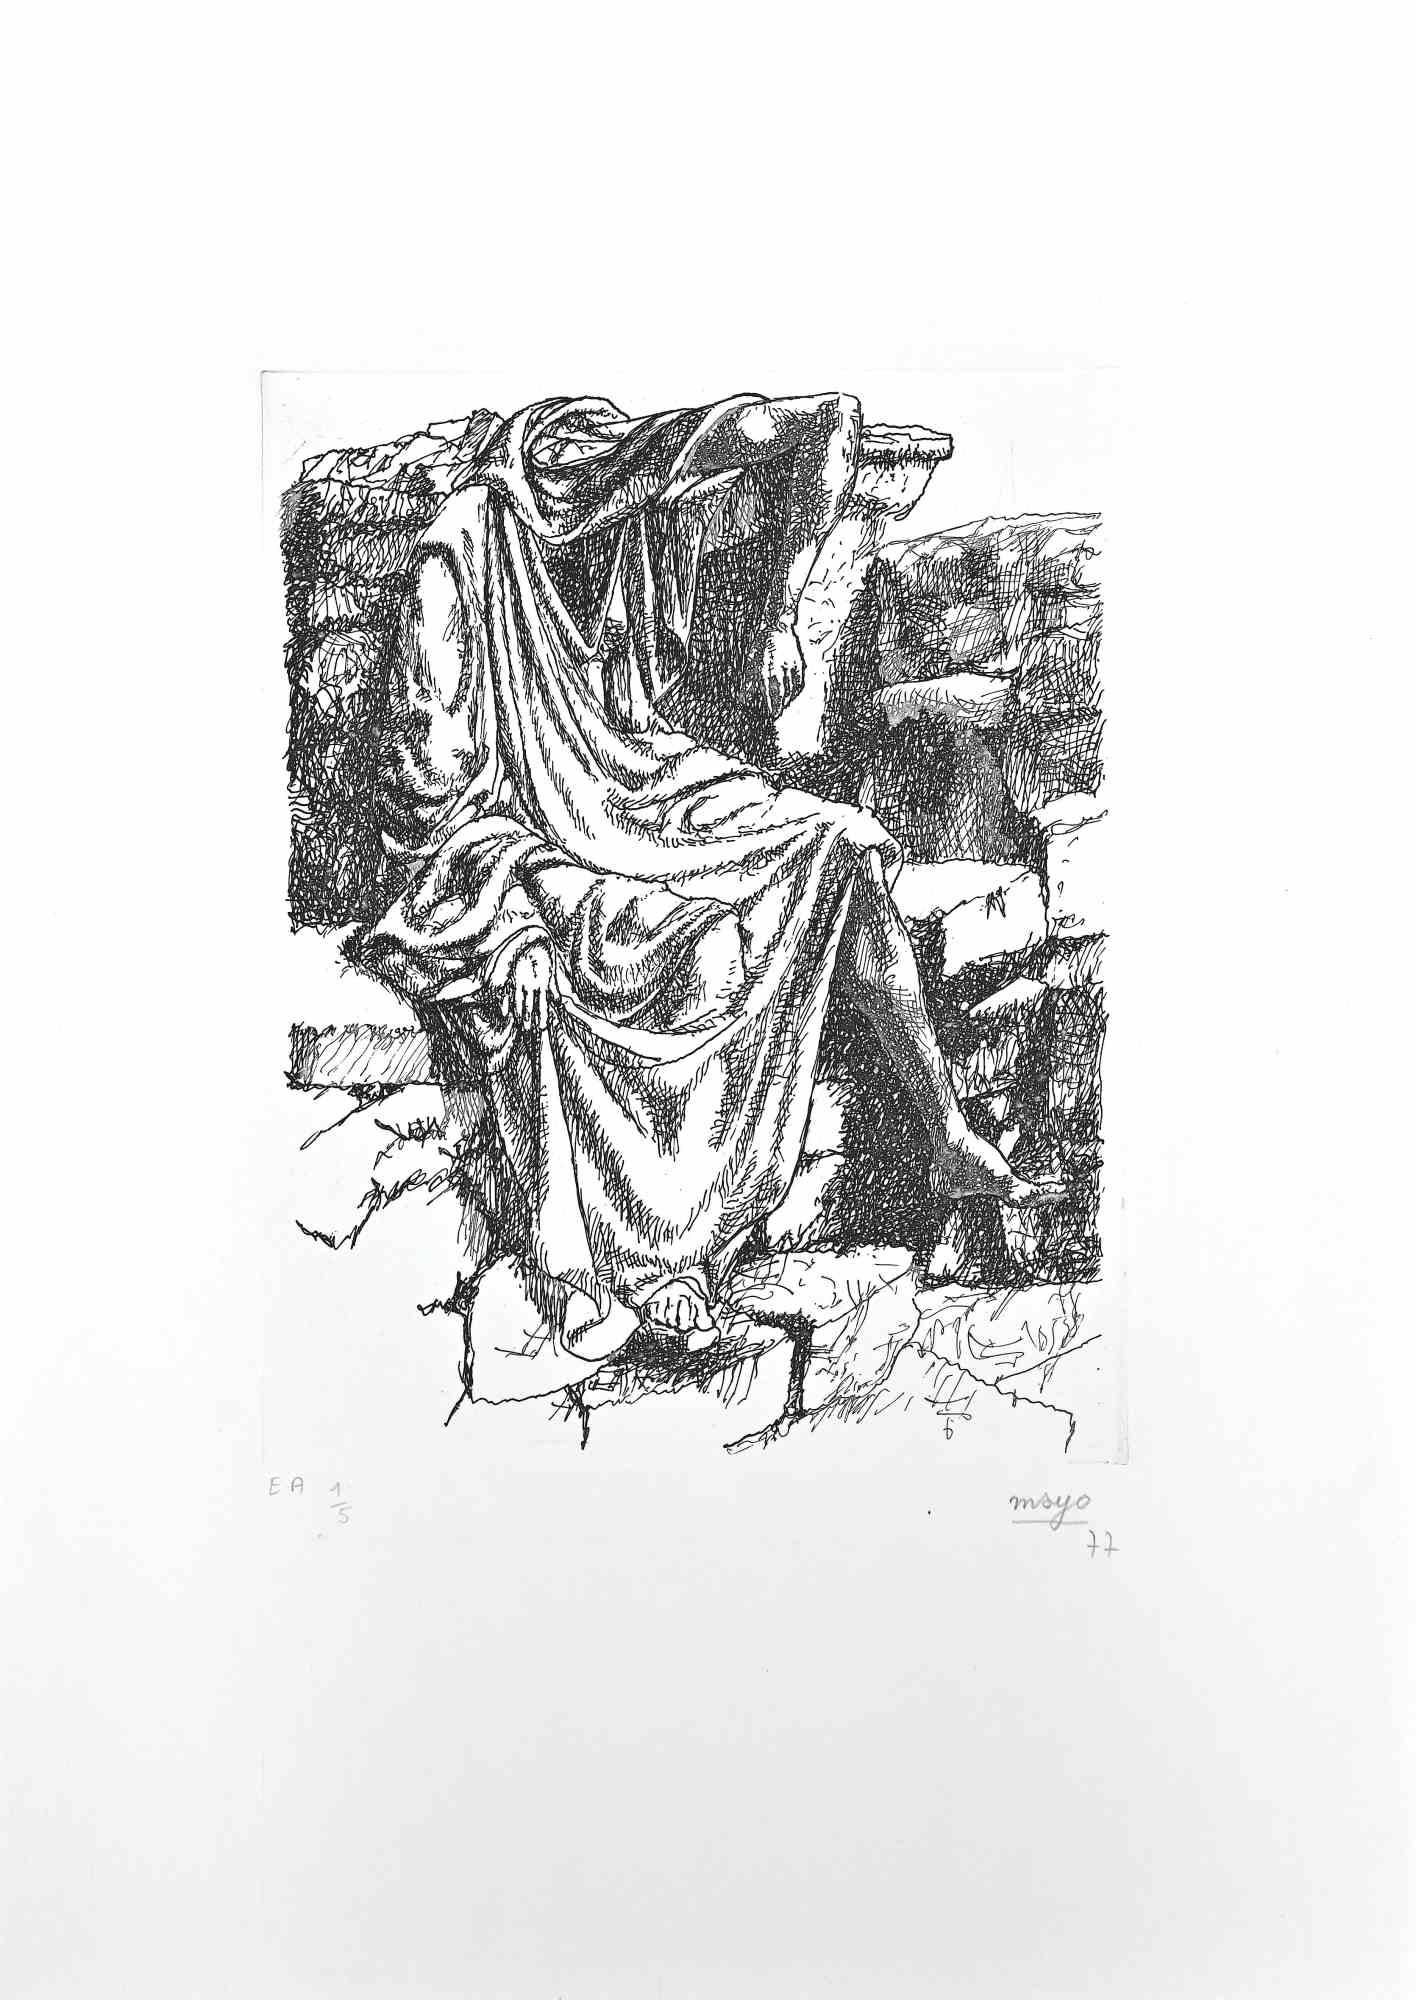 Personnage sans Tête  est une gravure originale en noir et blanc sur papier, réalisée par l'artiste Antoine Mayo , nom d'artiste de Malliarakis (1905-1990) en 1977.

Signé à la main au crayon dans la marge inférieure droite,  épreuve d'artiste,